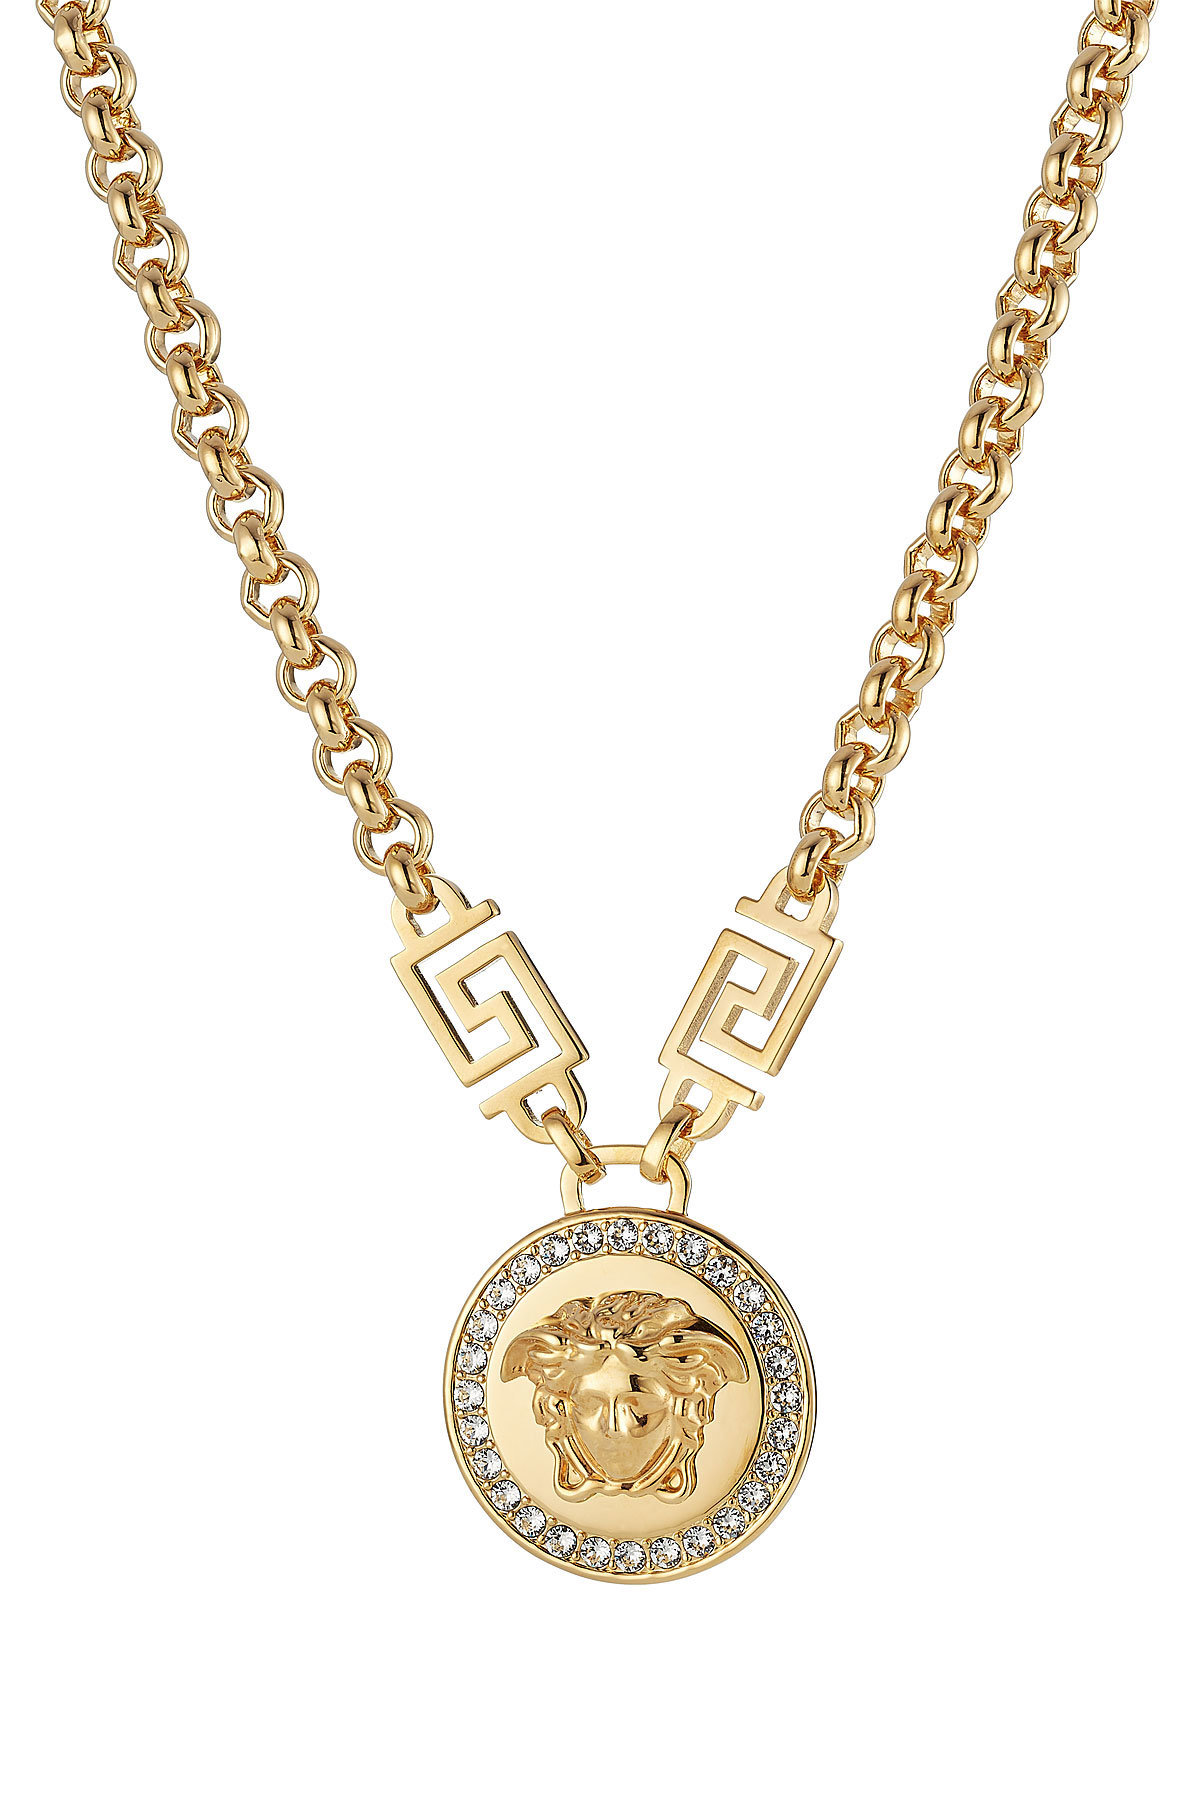 Versace - Embellished Medusa Necklace